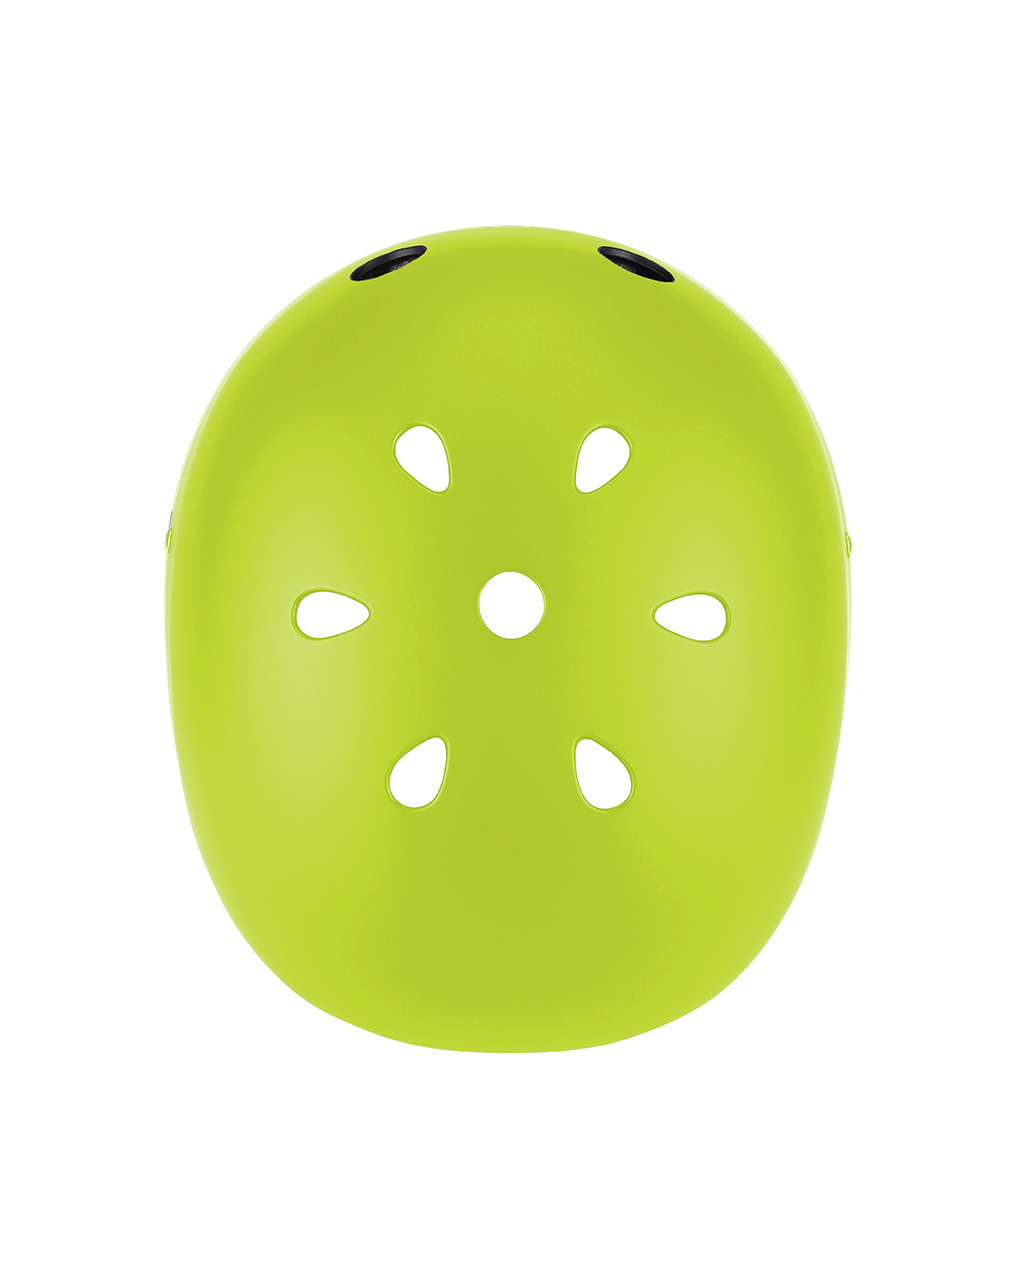 Capacete caschetto light xs/s (48-53 cm) - verde lime - globber - Globber